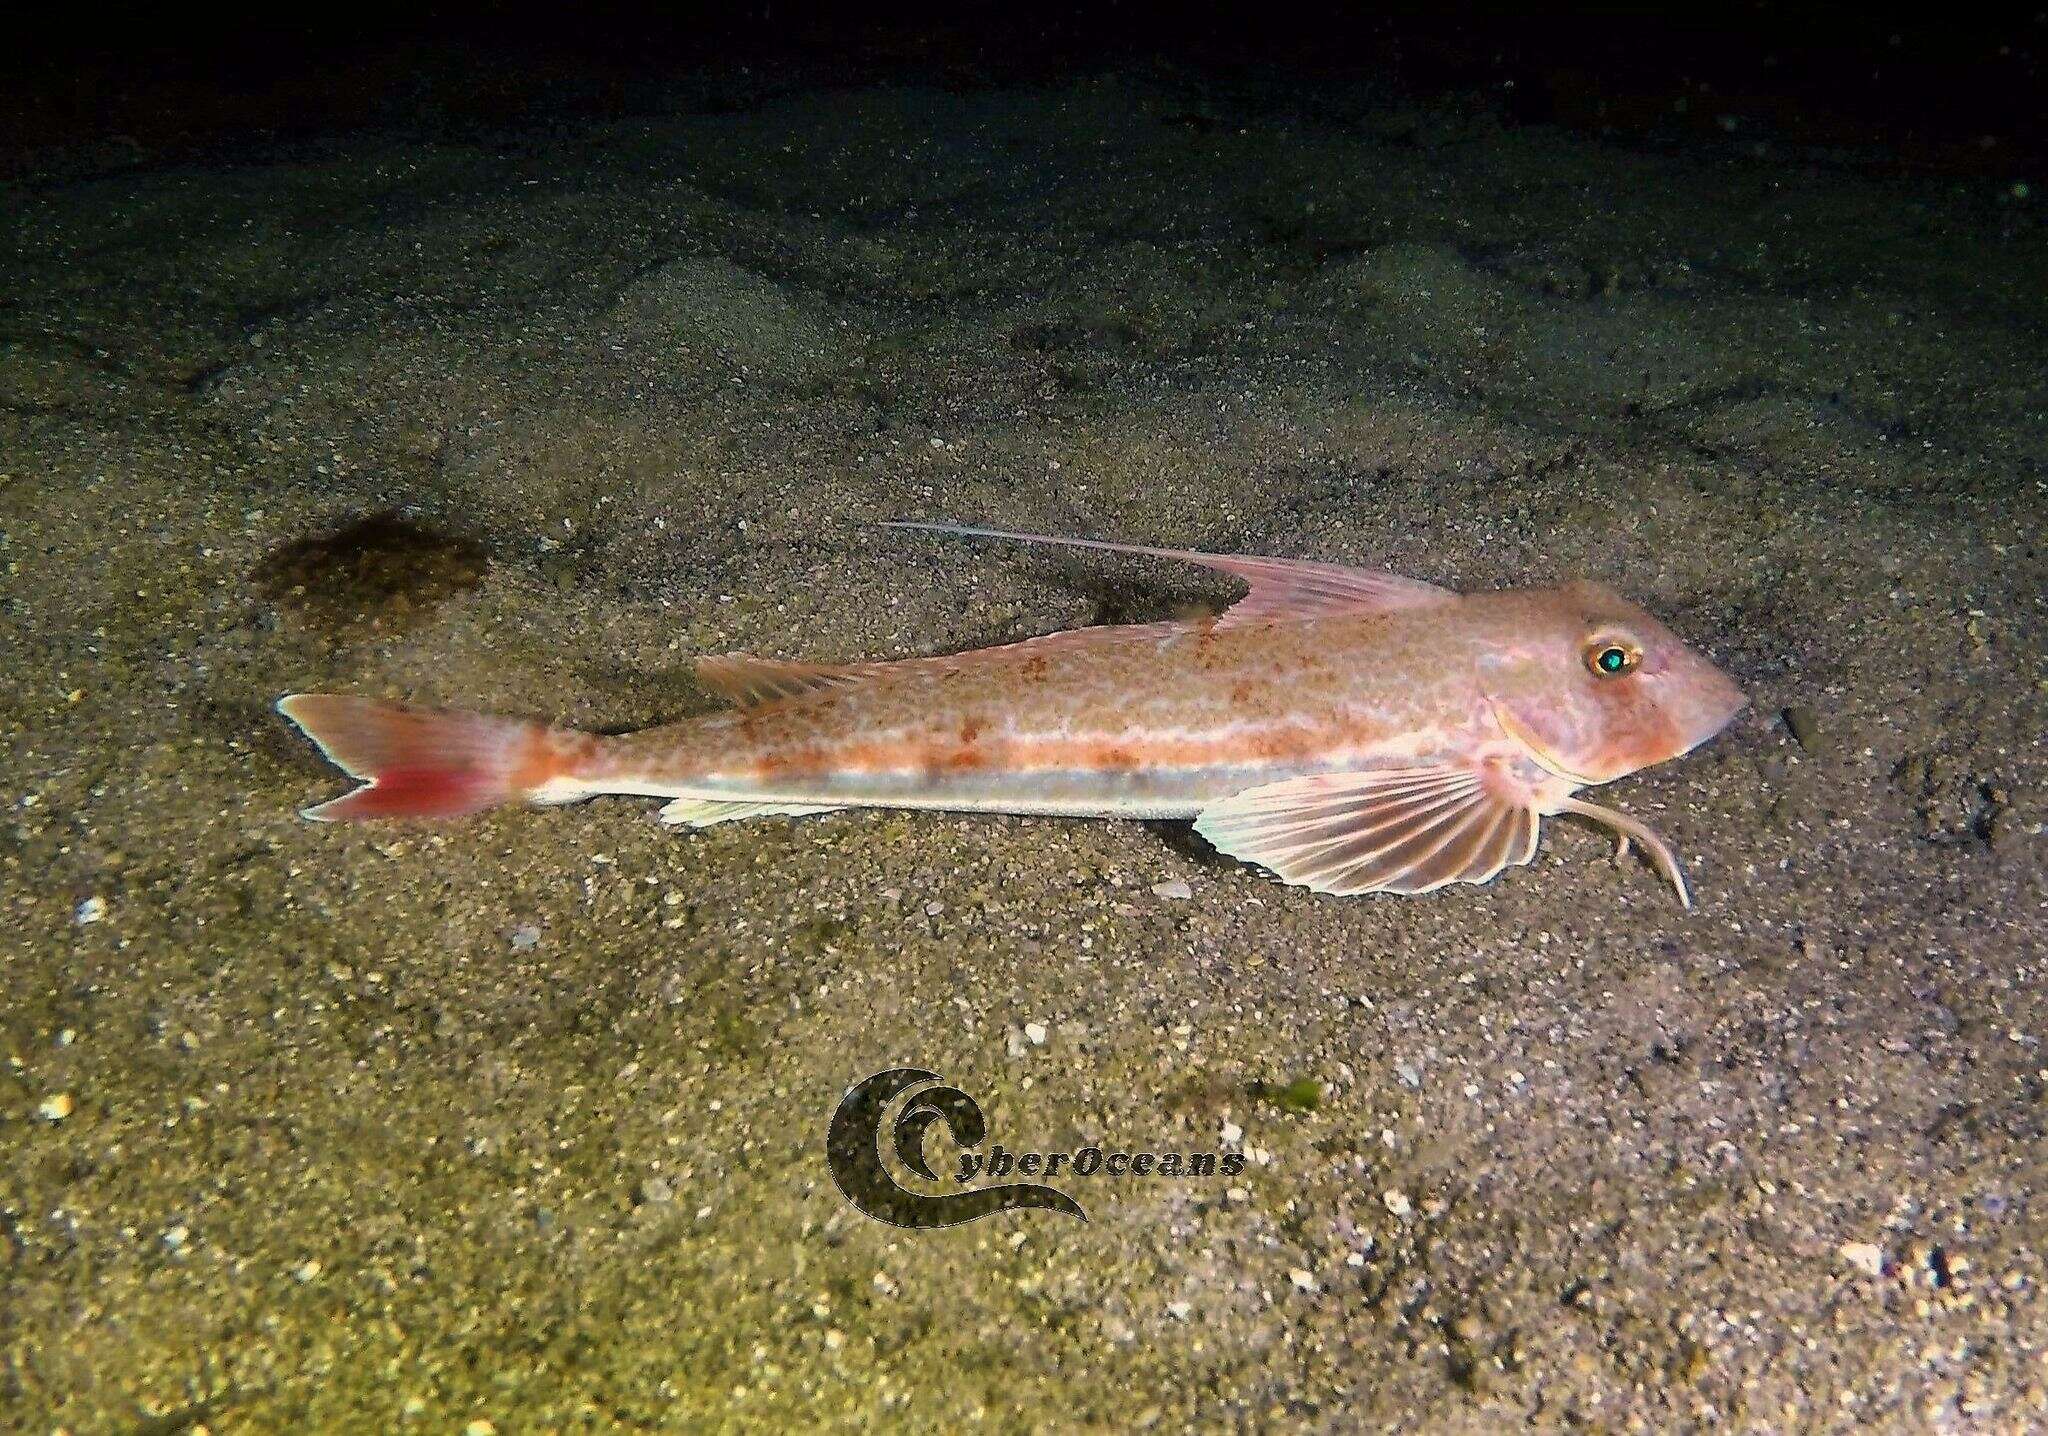 Antenli kırlangıç balığı resmi